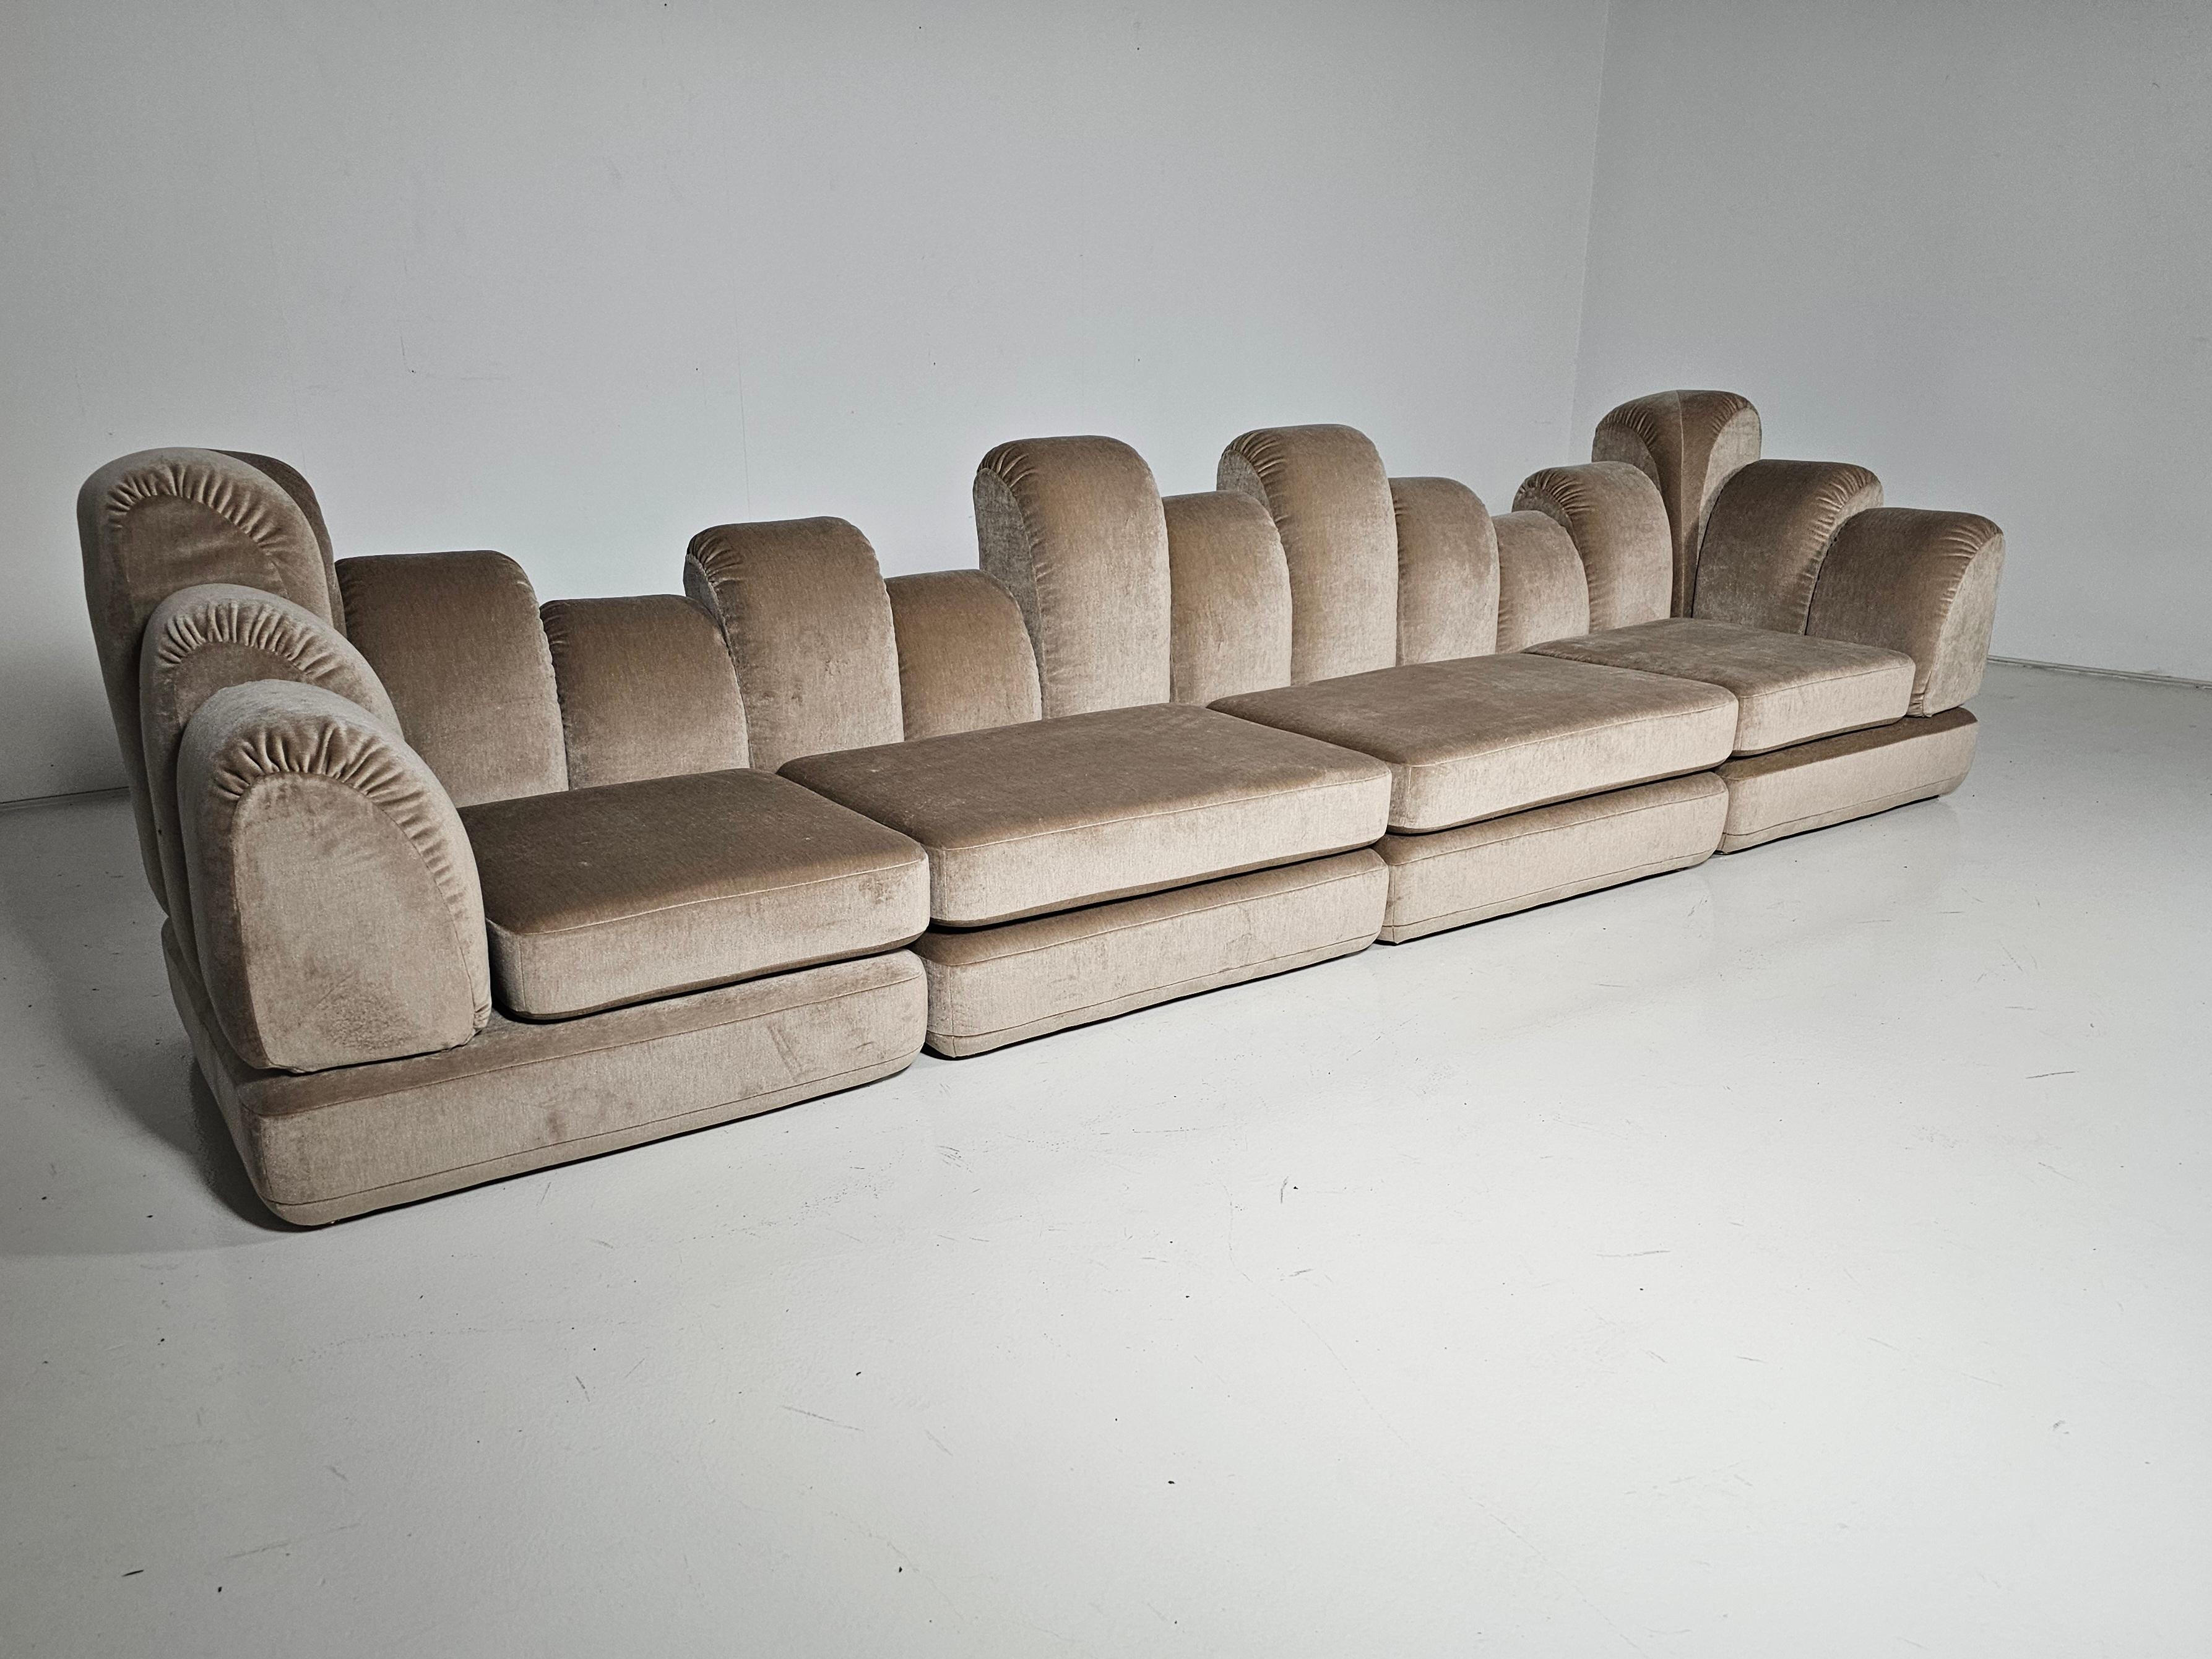 Hans Hopfer 'Dromadaire' Sektionssofa aus Mohairwolle, Roche Bobois, 1970

Sektionssofa, entworfen von Hans Hopfer und hergestellt von Roche Bobois in Frankreich, um 1970. Eine sehr seltene und sammelwürdige modulare Couch, neu gepolstert mit